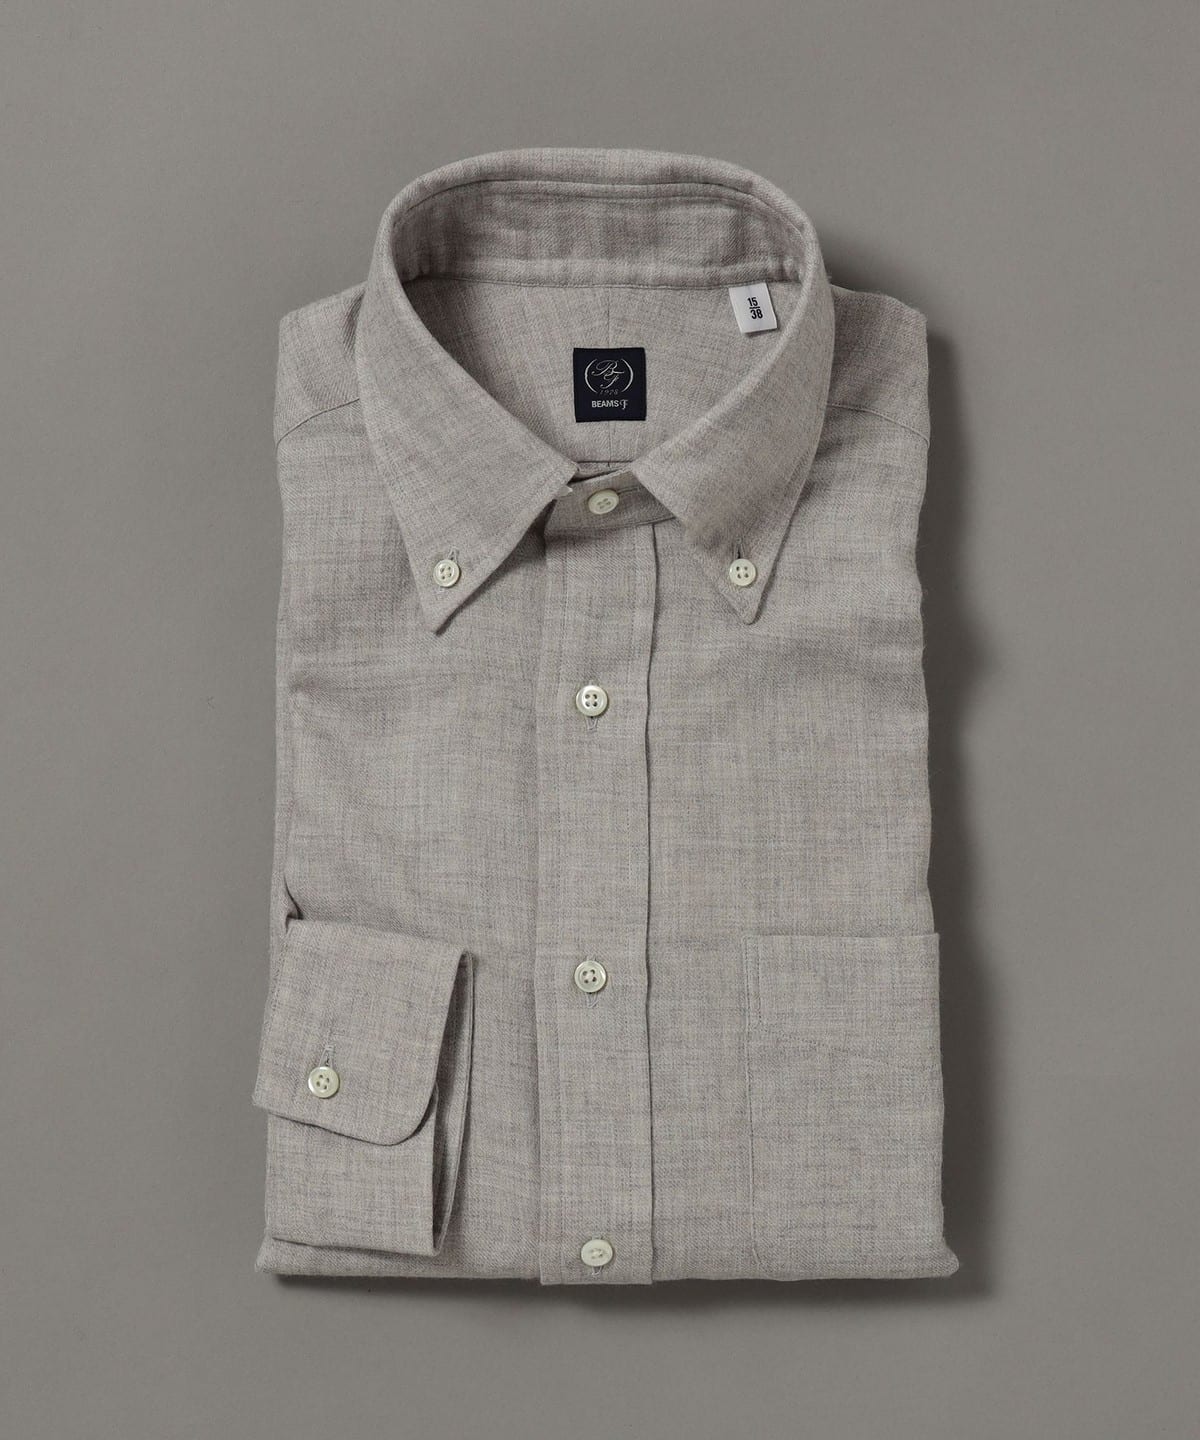 BEAMS F BEAMS F Cotton wool button down shirt (shirt BEAMS blouse